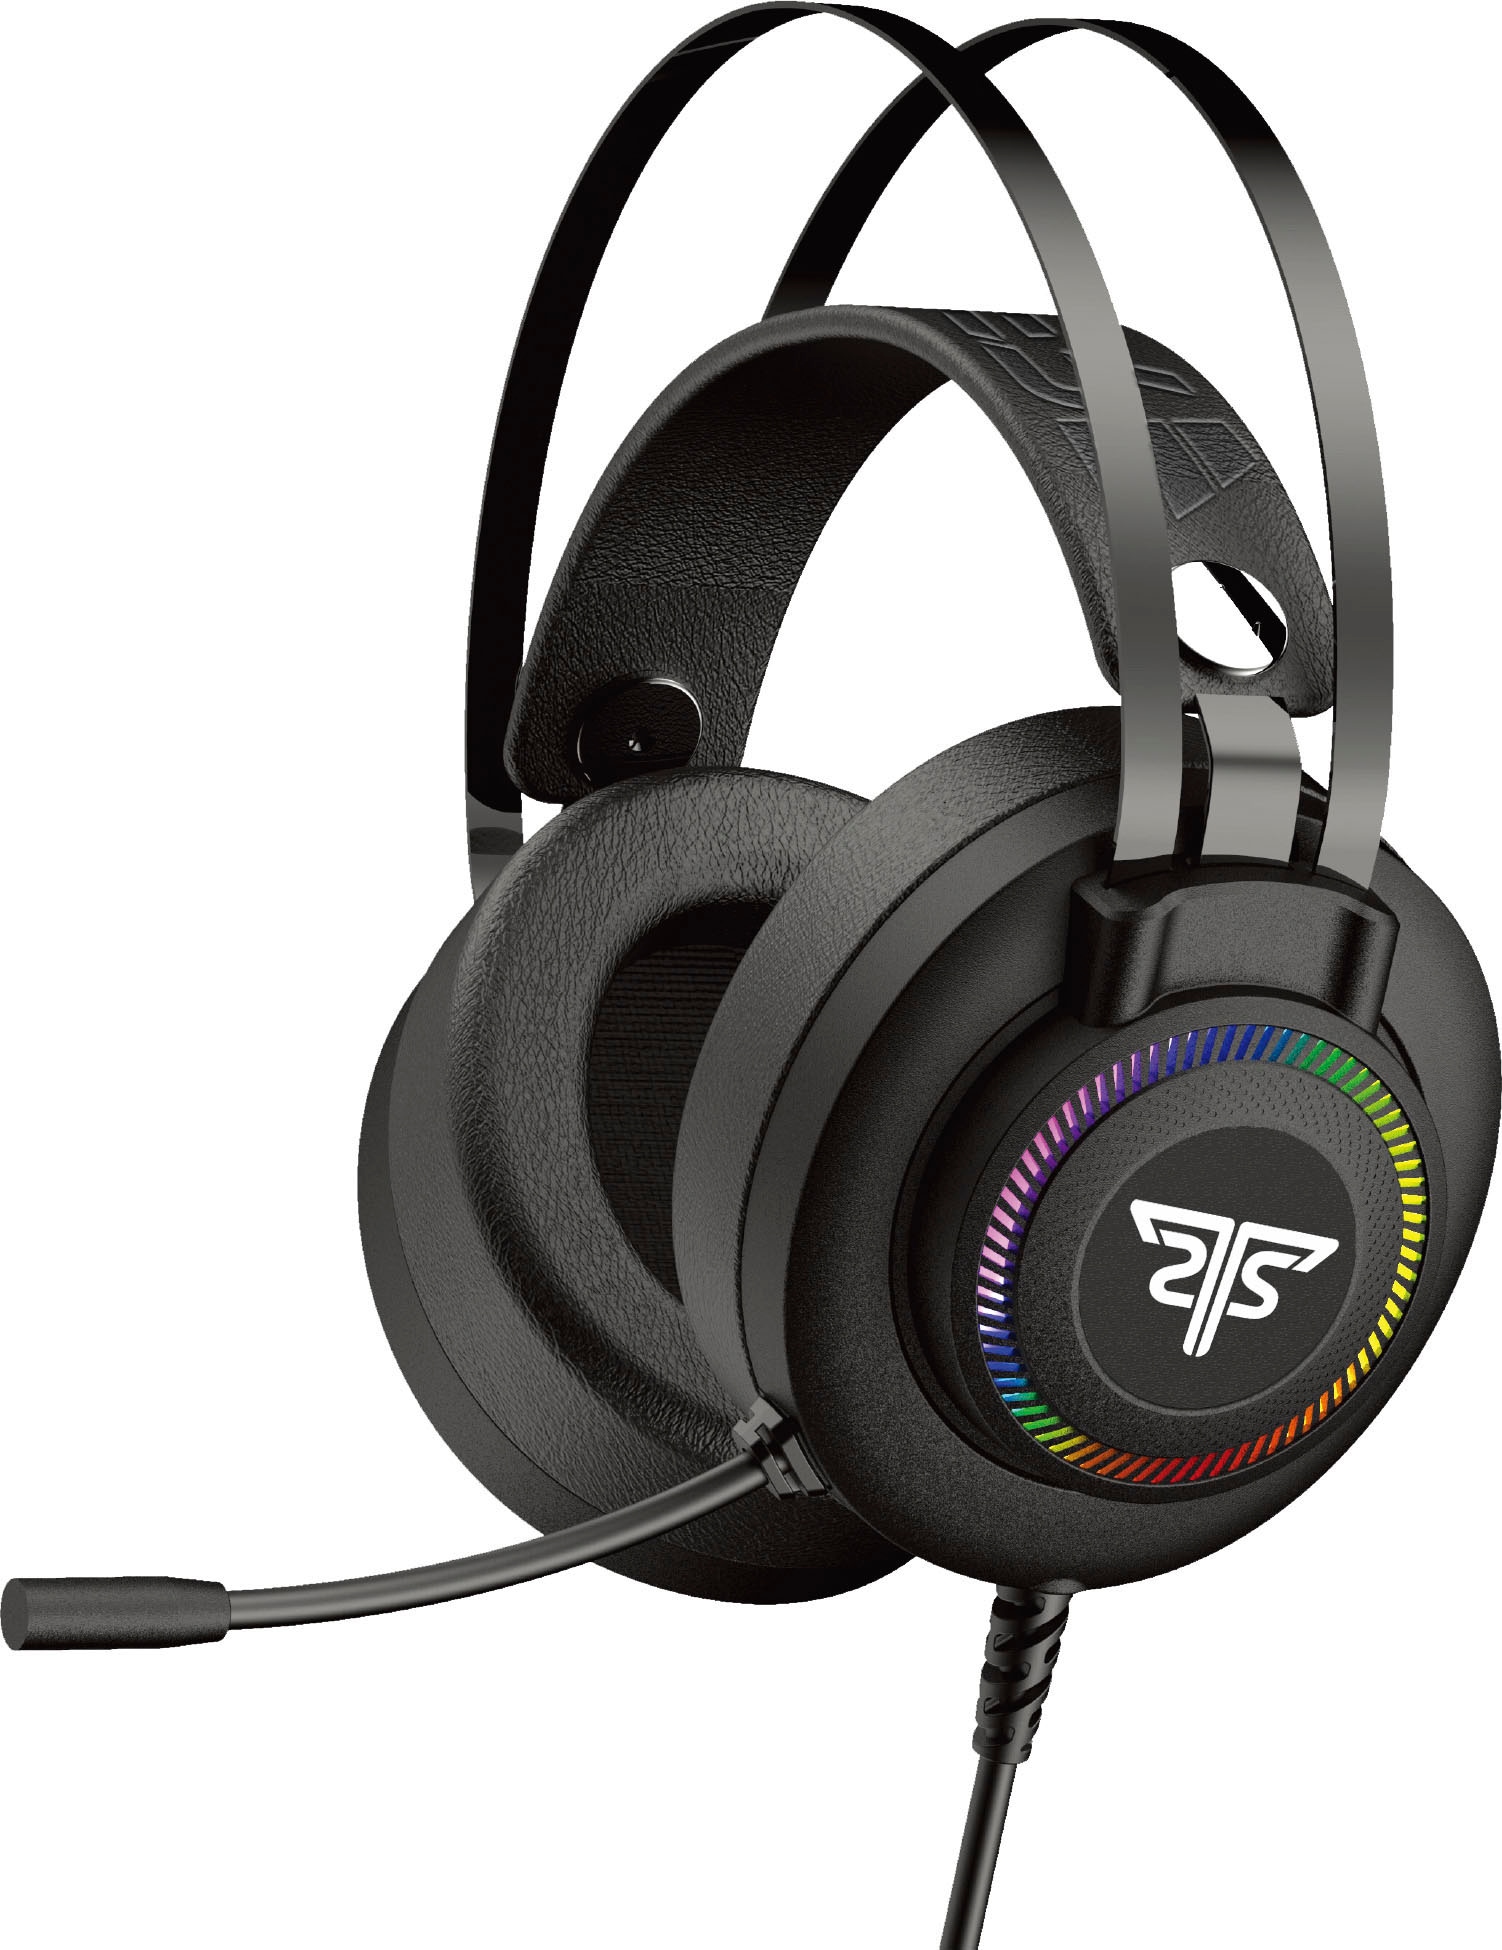 ➥ Hyrican Gaming-Headset »Striker OPERATOR Stereo« PC/PS4 geeignet für | bestellen ST-GH530 2.0 kabelgebunden«, Jelmoli-Versand jetzt